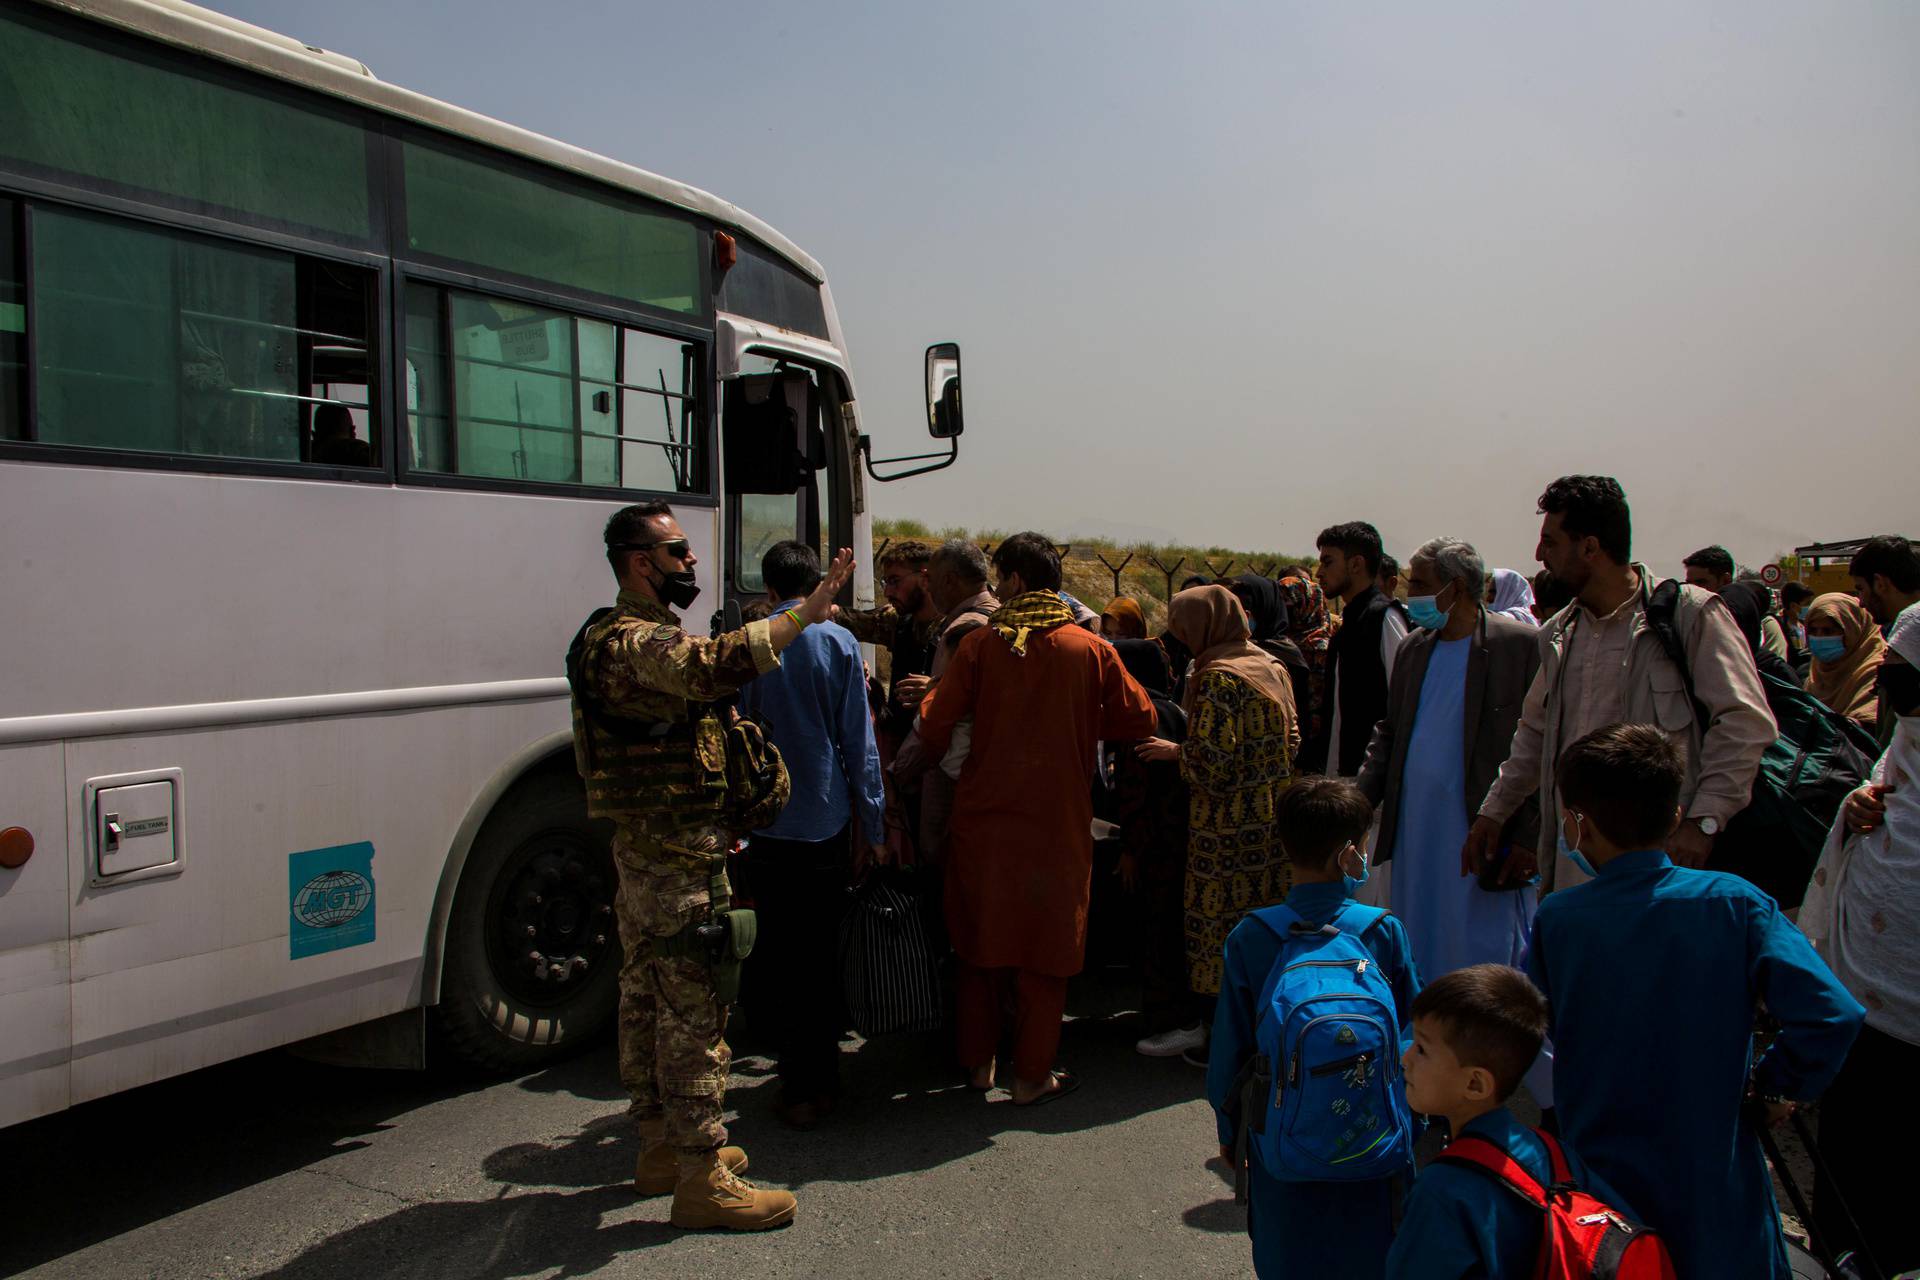 German forces assist in Afghanistan evacuation